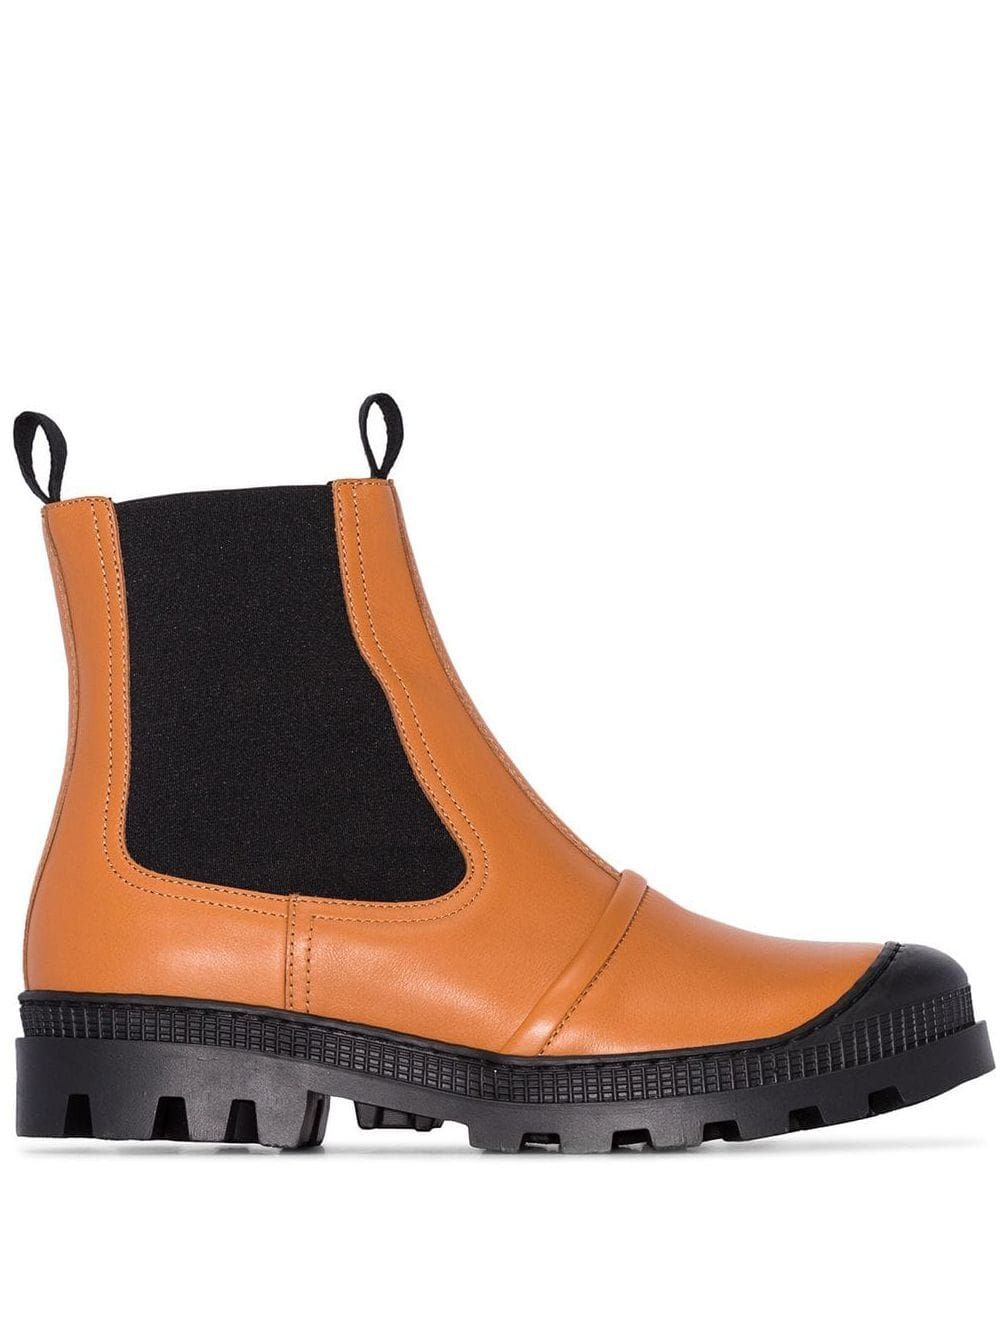 winter boot trends 219